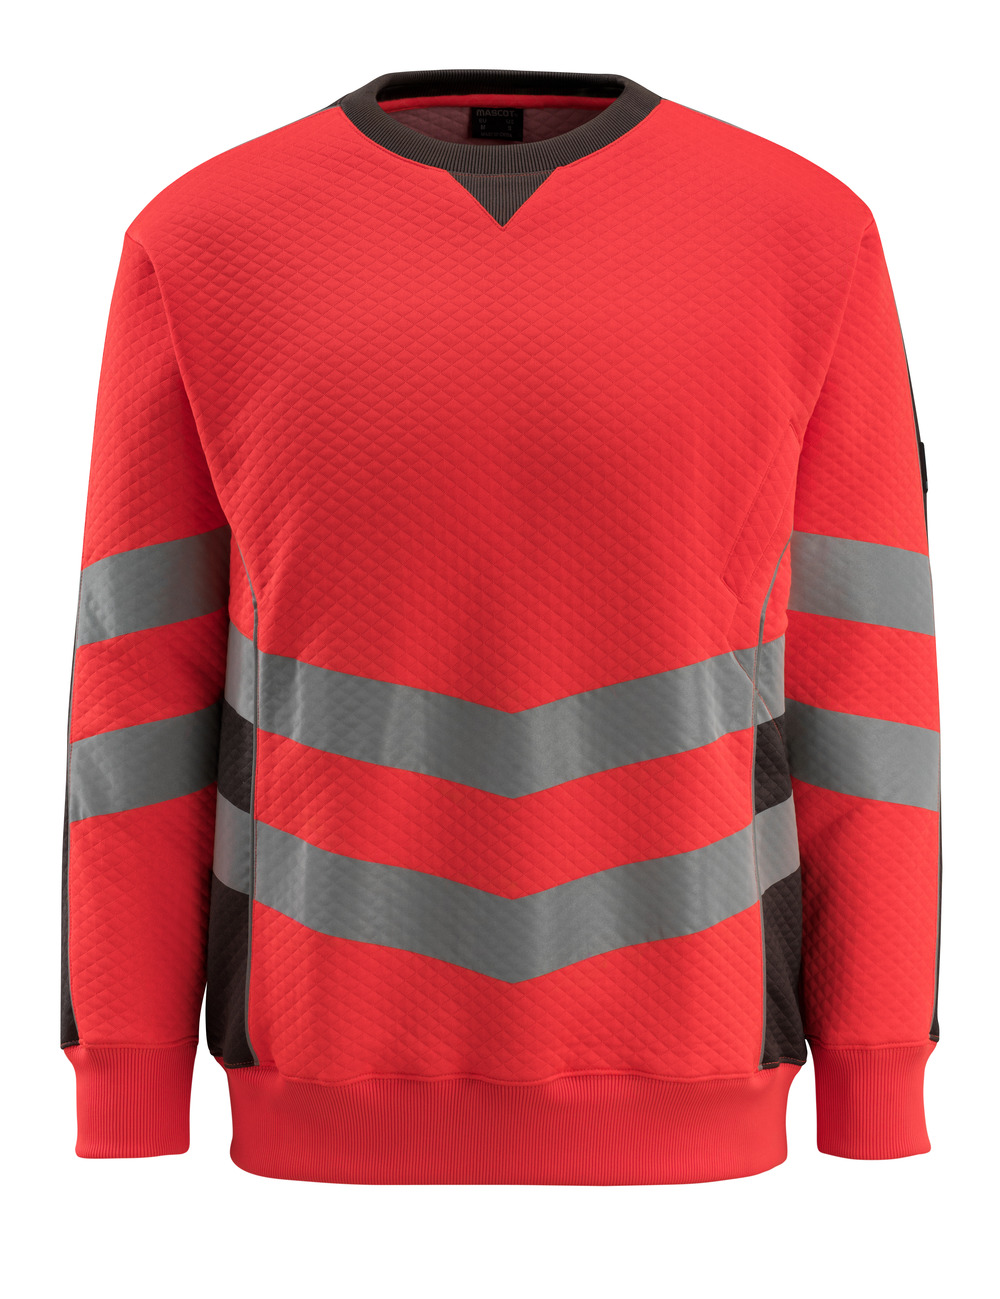 MASCOT-Warnschutz, Warn-Sweatshirt, Wigton,  310 g/m², rot/dunkelanthrazit

